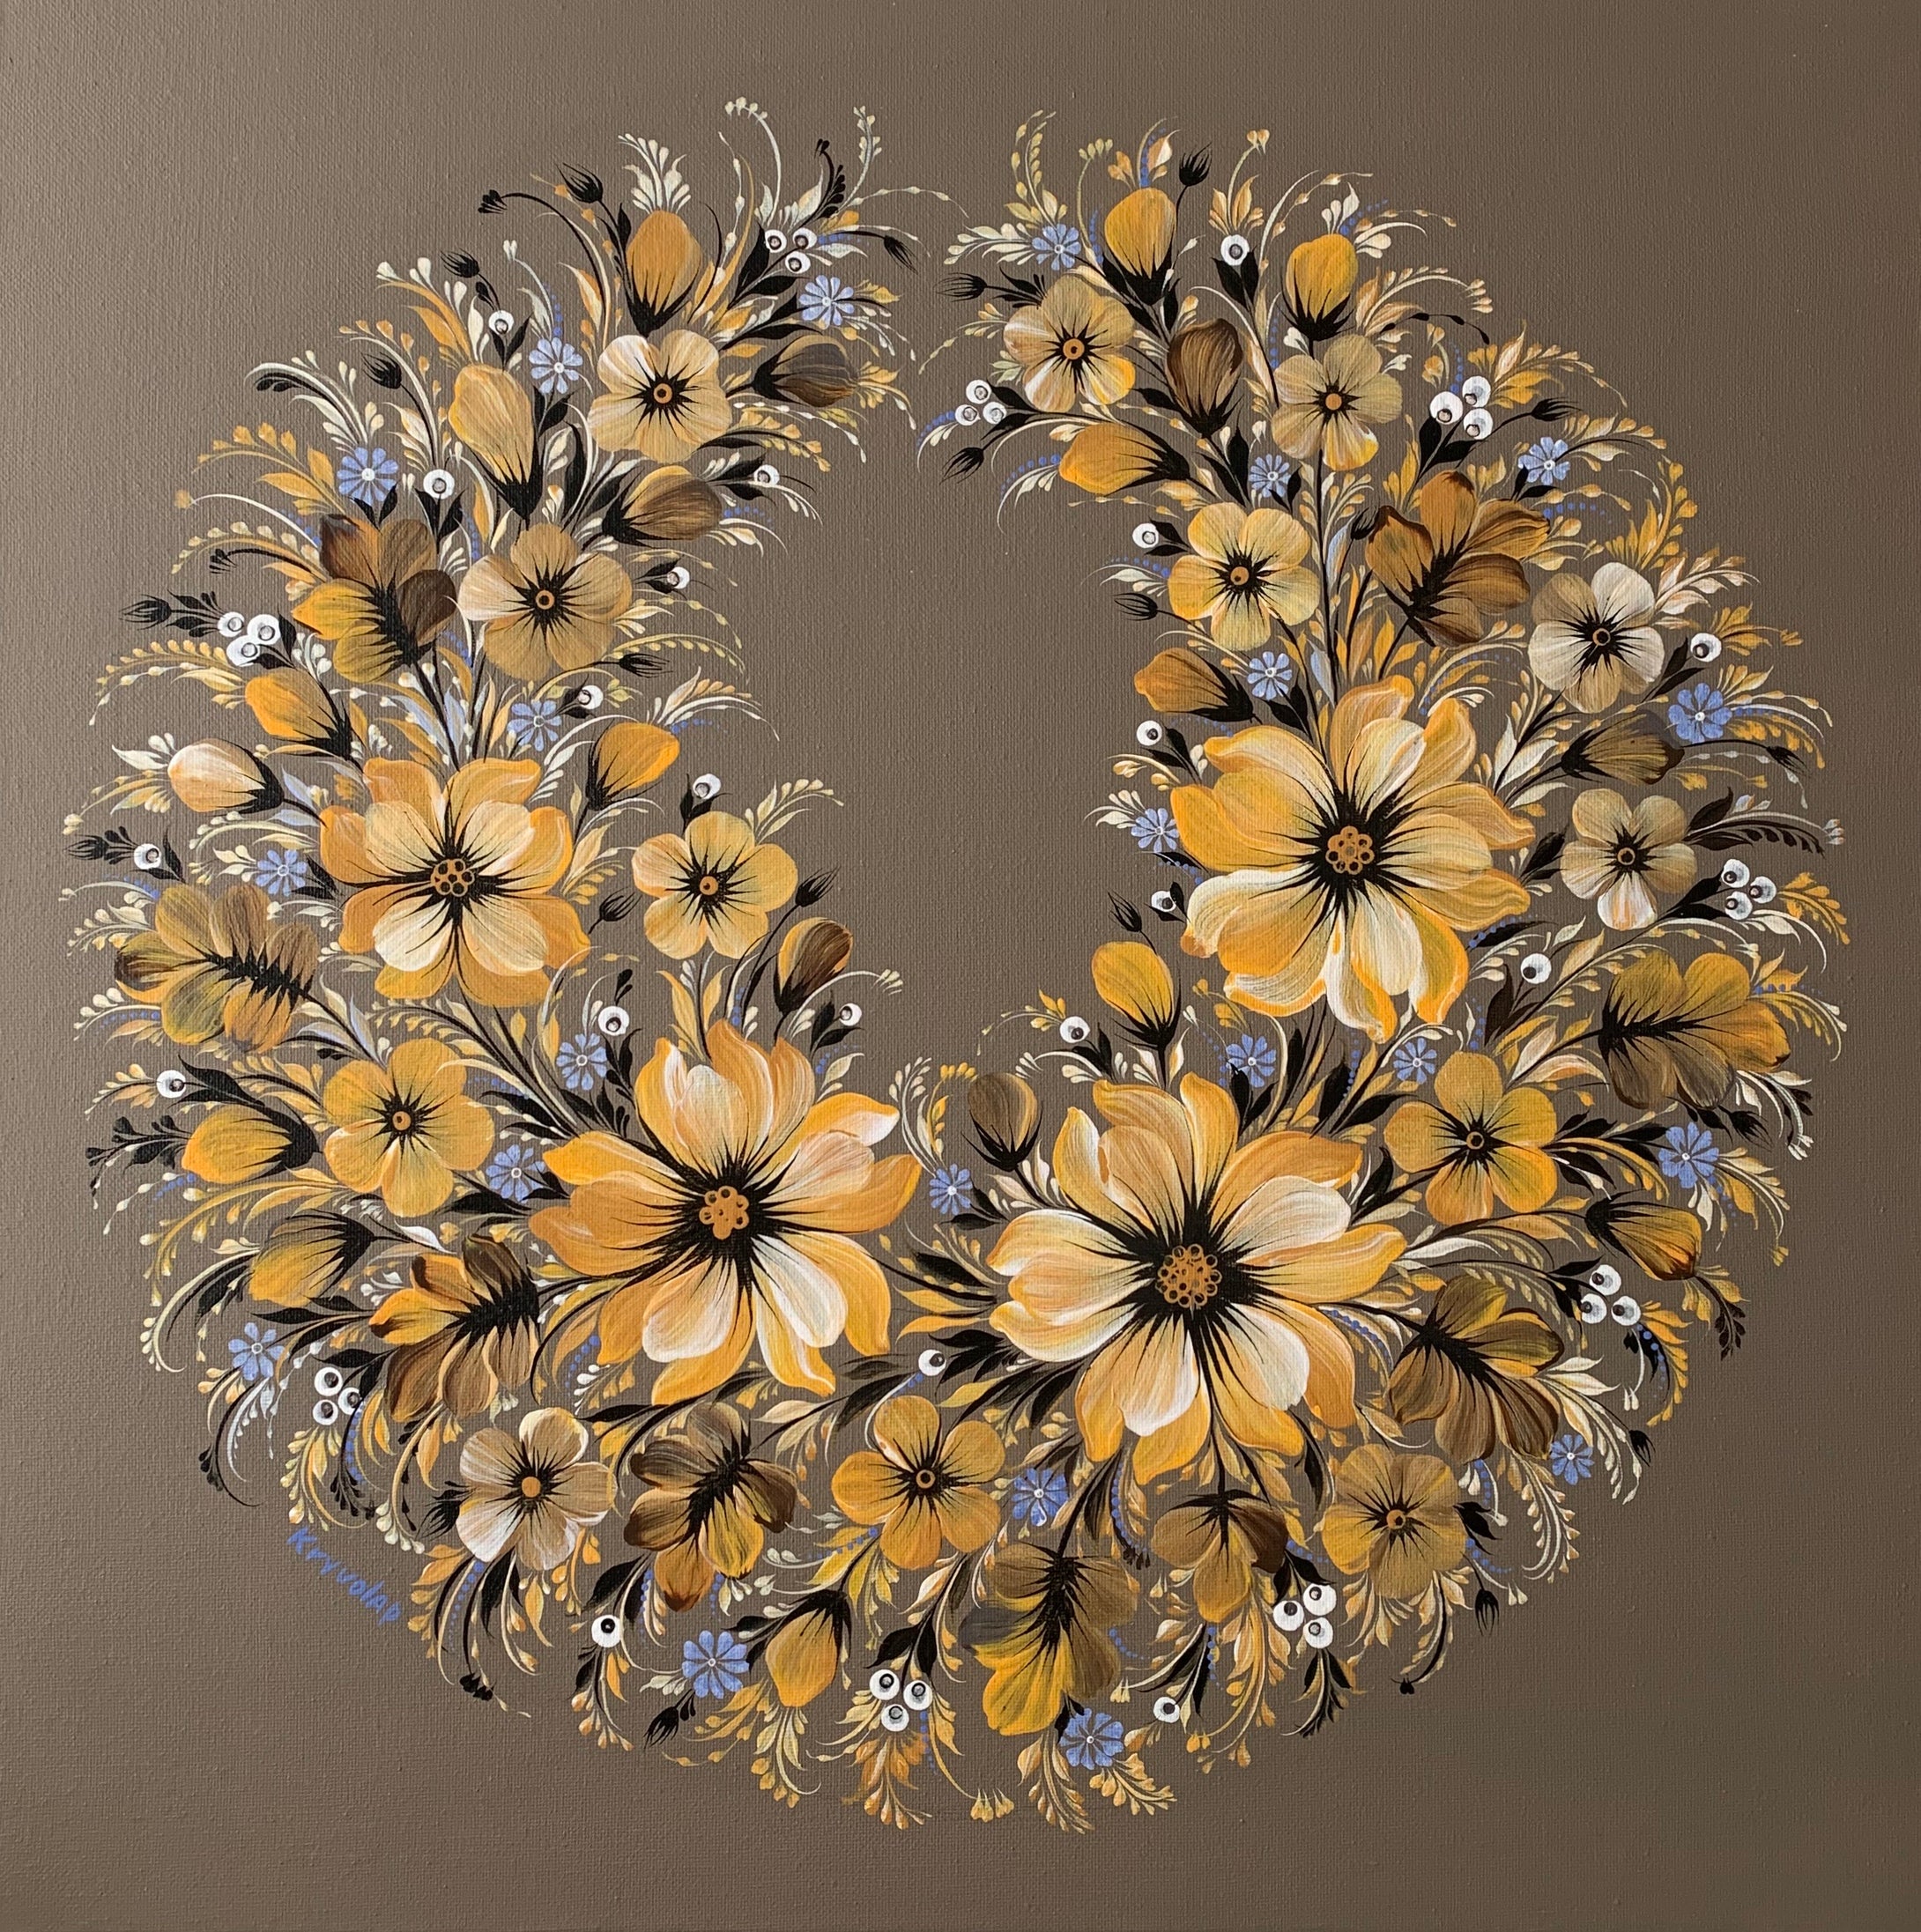 MUSTARD FLOWERS - 20 in x 20 in (50.8 cm x 50.8 cm)